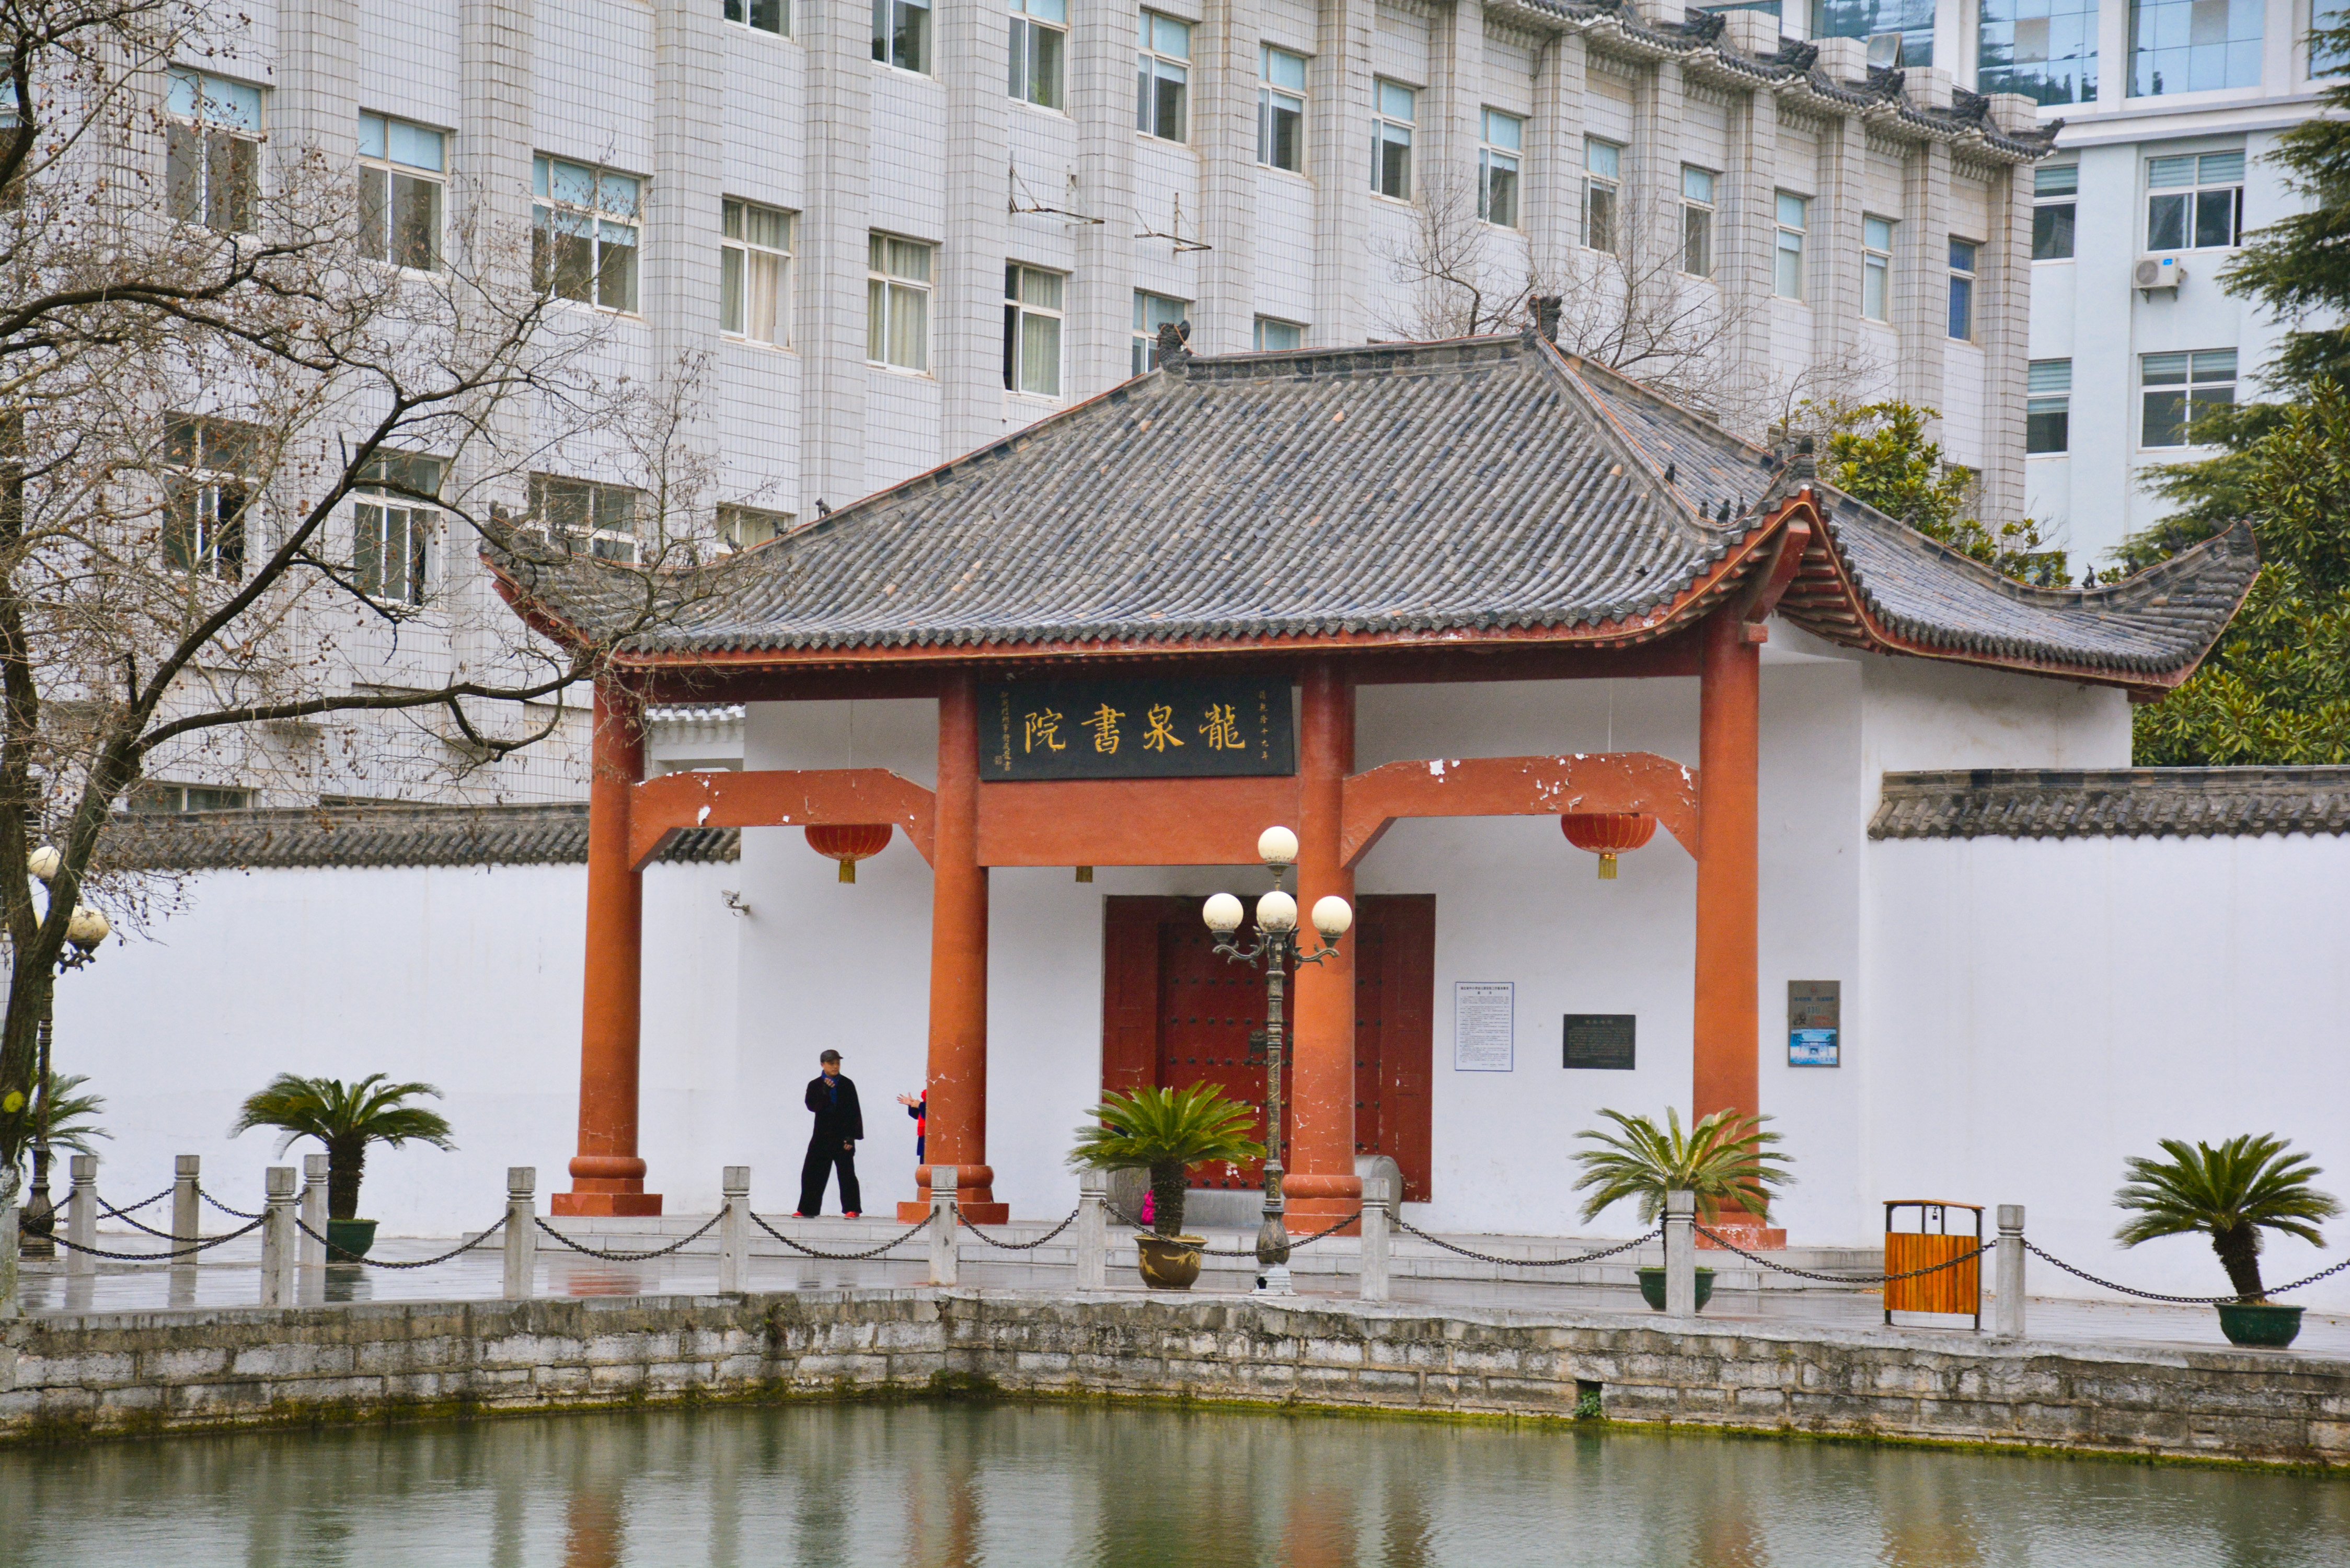 湖的一侧是龙泉书院,现在属于龙泉中学内,学校放假亦或着春节缘故